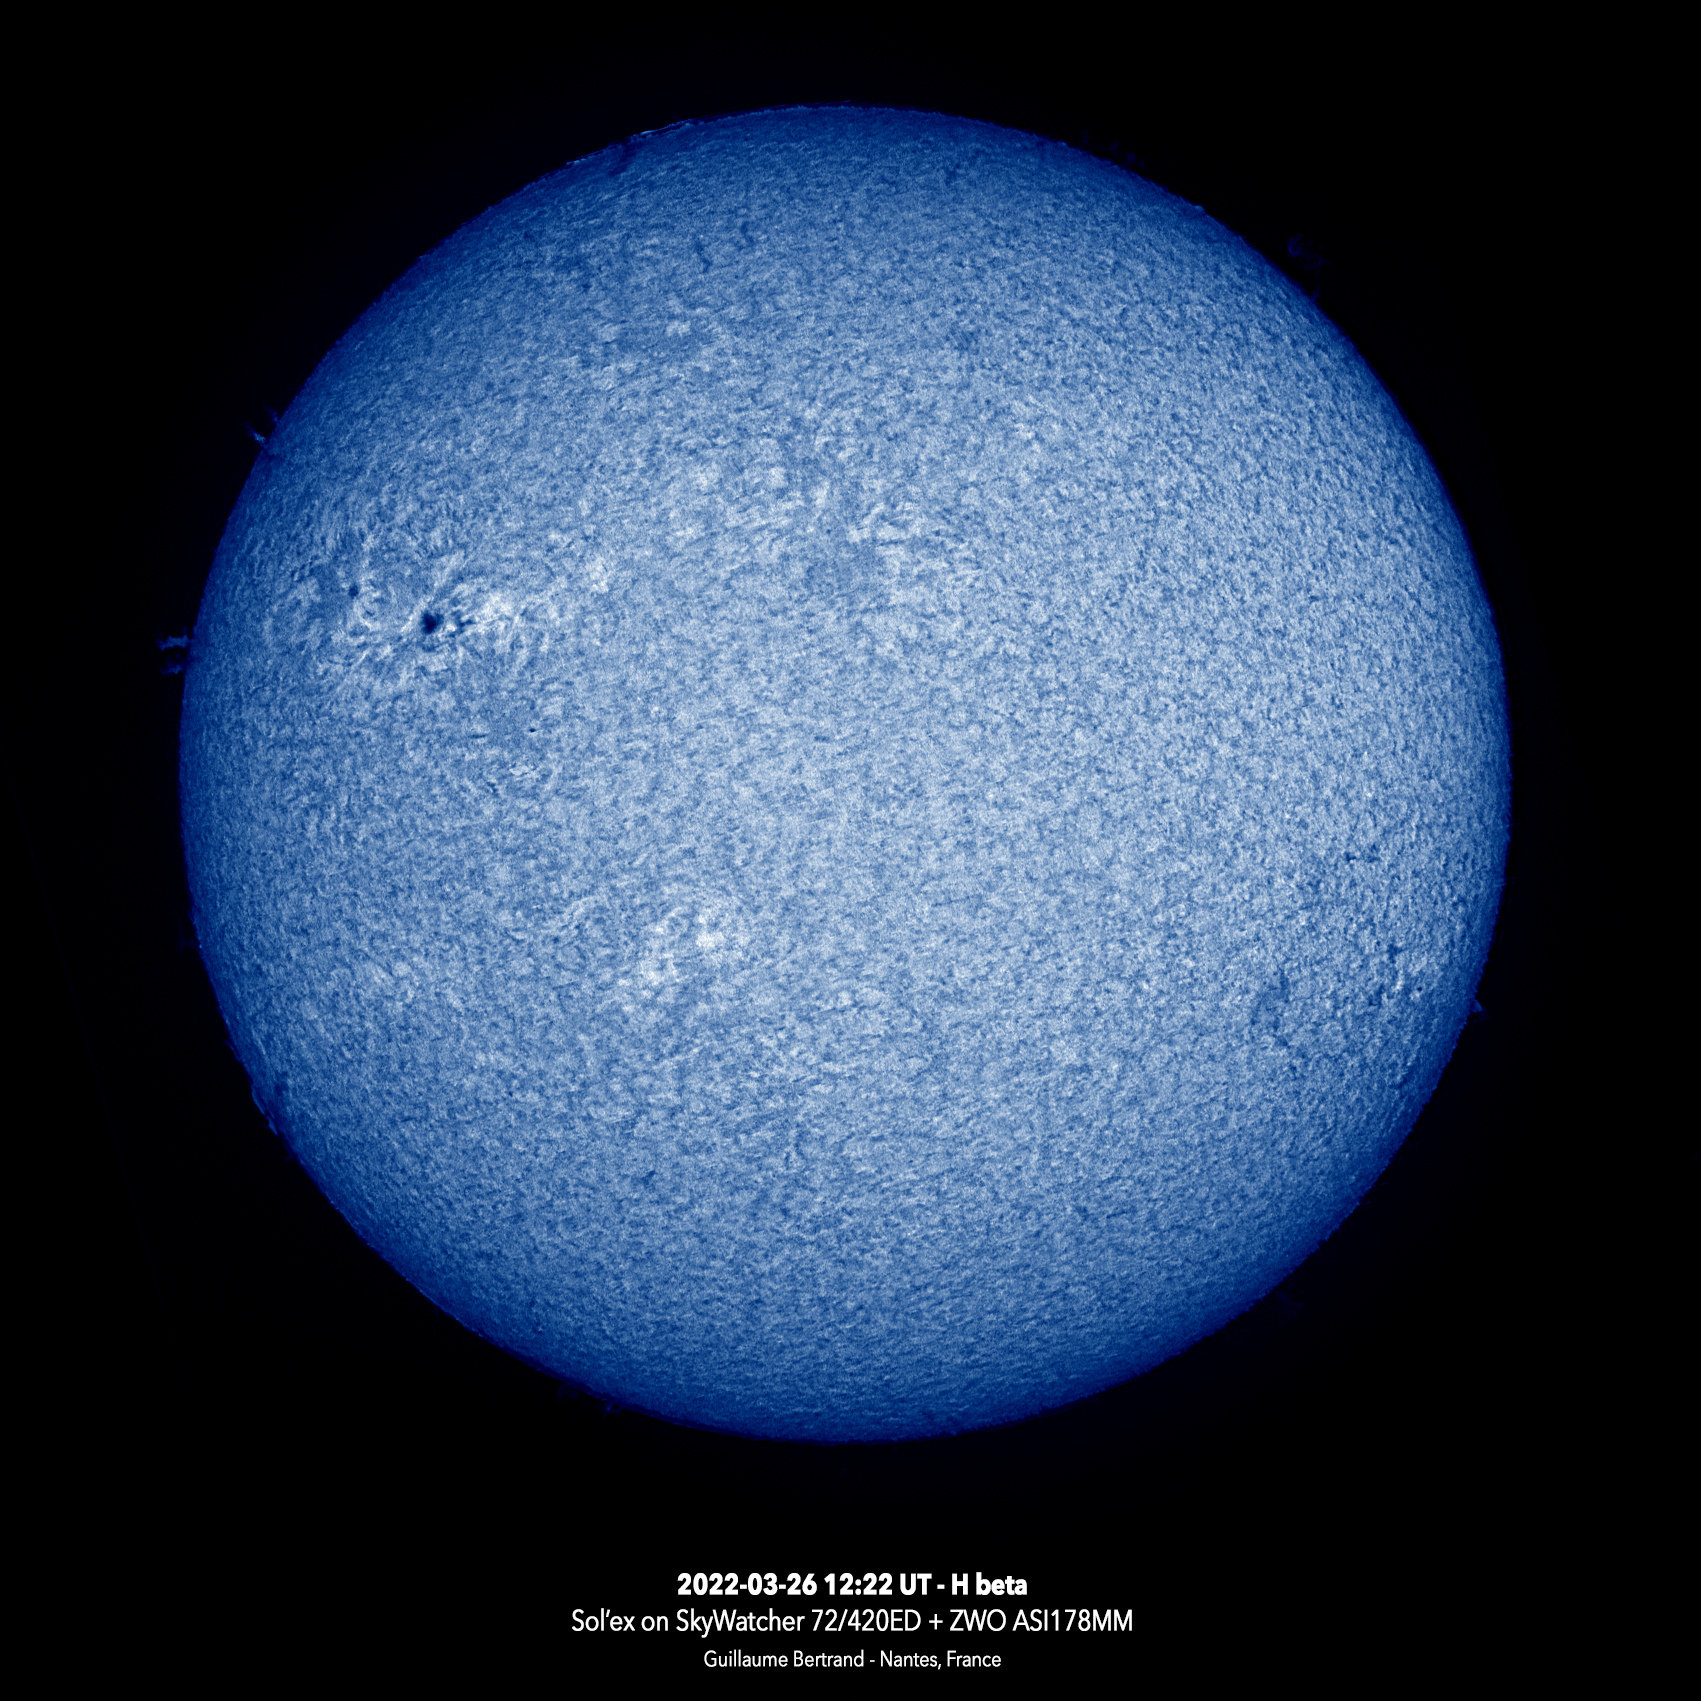 sun-20220323-12_22_hbeta.jpg.e19f0f20a2d4c964a2ccce0493ad273c.jpg